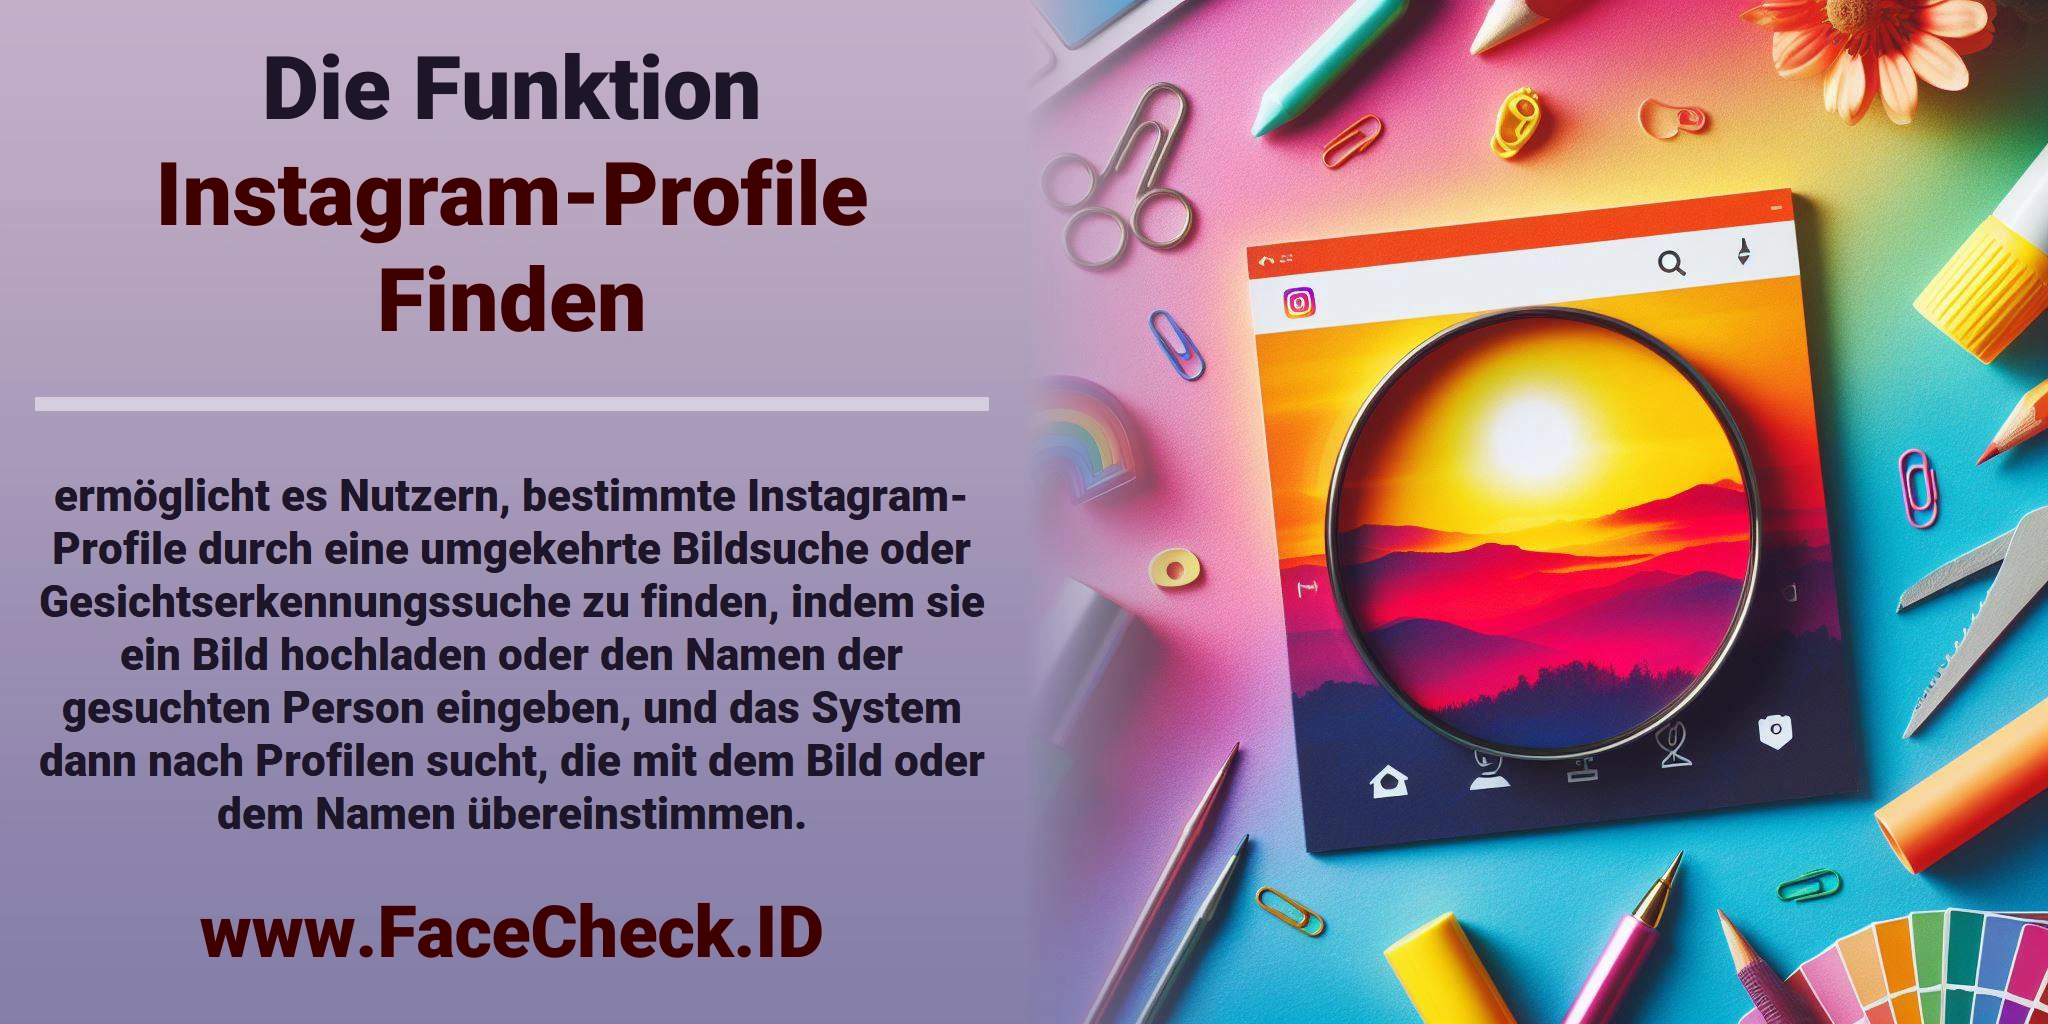 Die Funktion <b>Instagram-Profile Finden</b> ermöglicht es Nutzern, bestimmte Instagram-Profile durch eine umgekehrte Bildsuche oder Gesichtserkennungssuche zu finden, indem sie ein Bild hochladen oder den Namen der gesuchten Person eingeben, und das System dann nach Profilen sucht, die mit dem Bild oder dem Namen übereinstimmen.